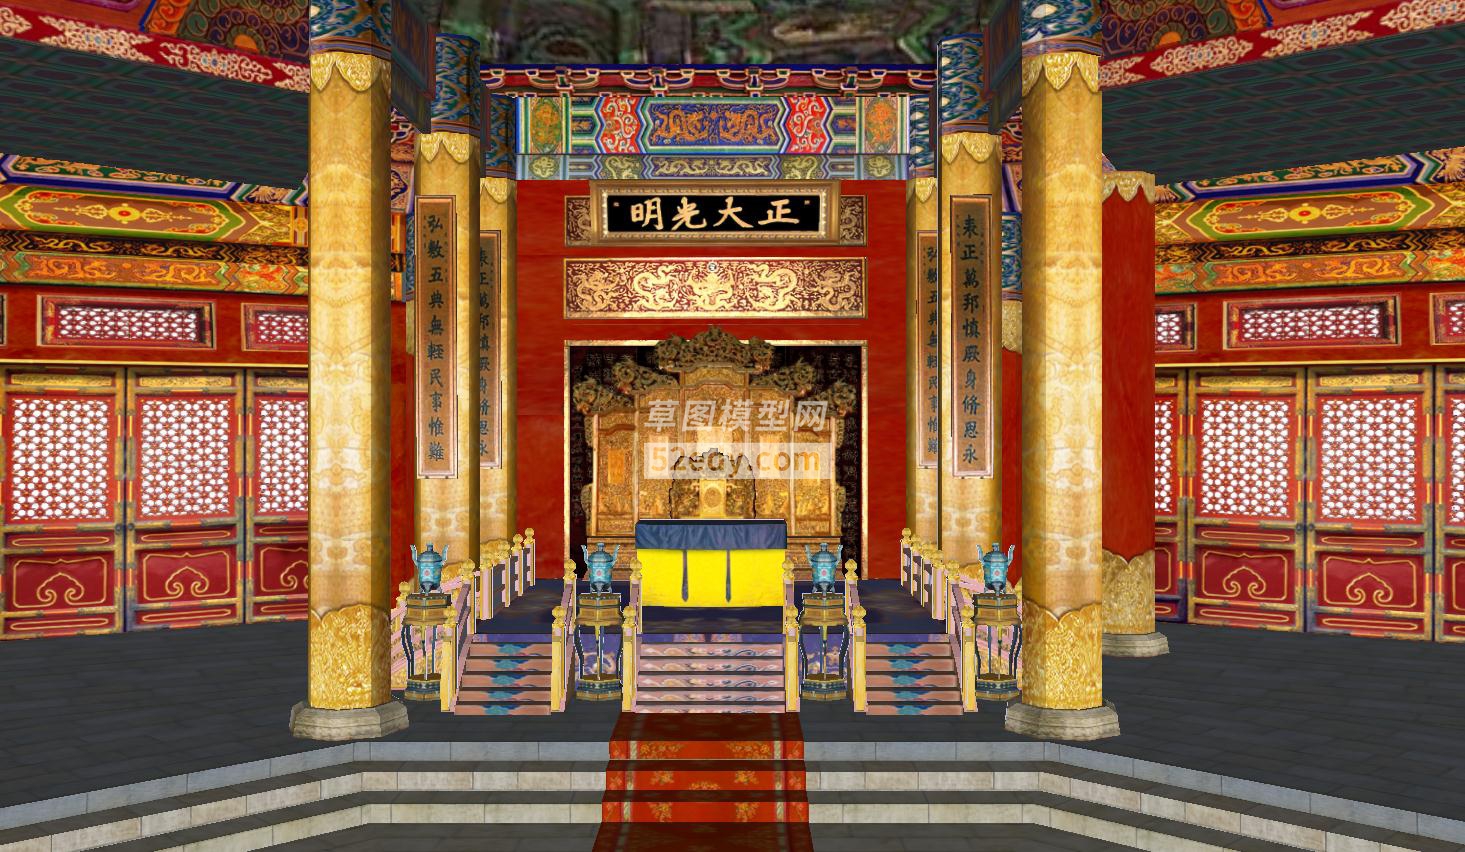 皇宫大雄宝殿的SU模型设计QQ浏览器截图20190124215615(2)